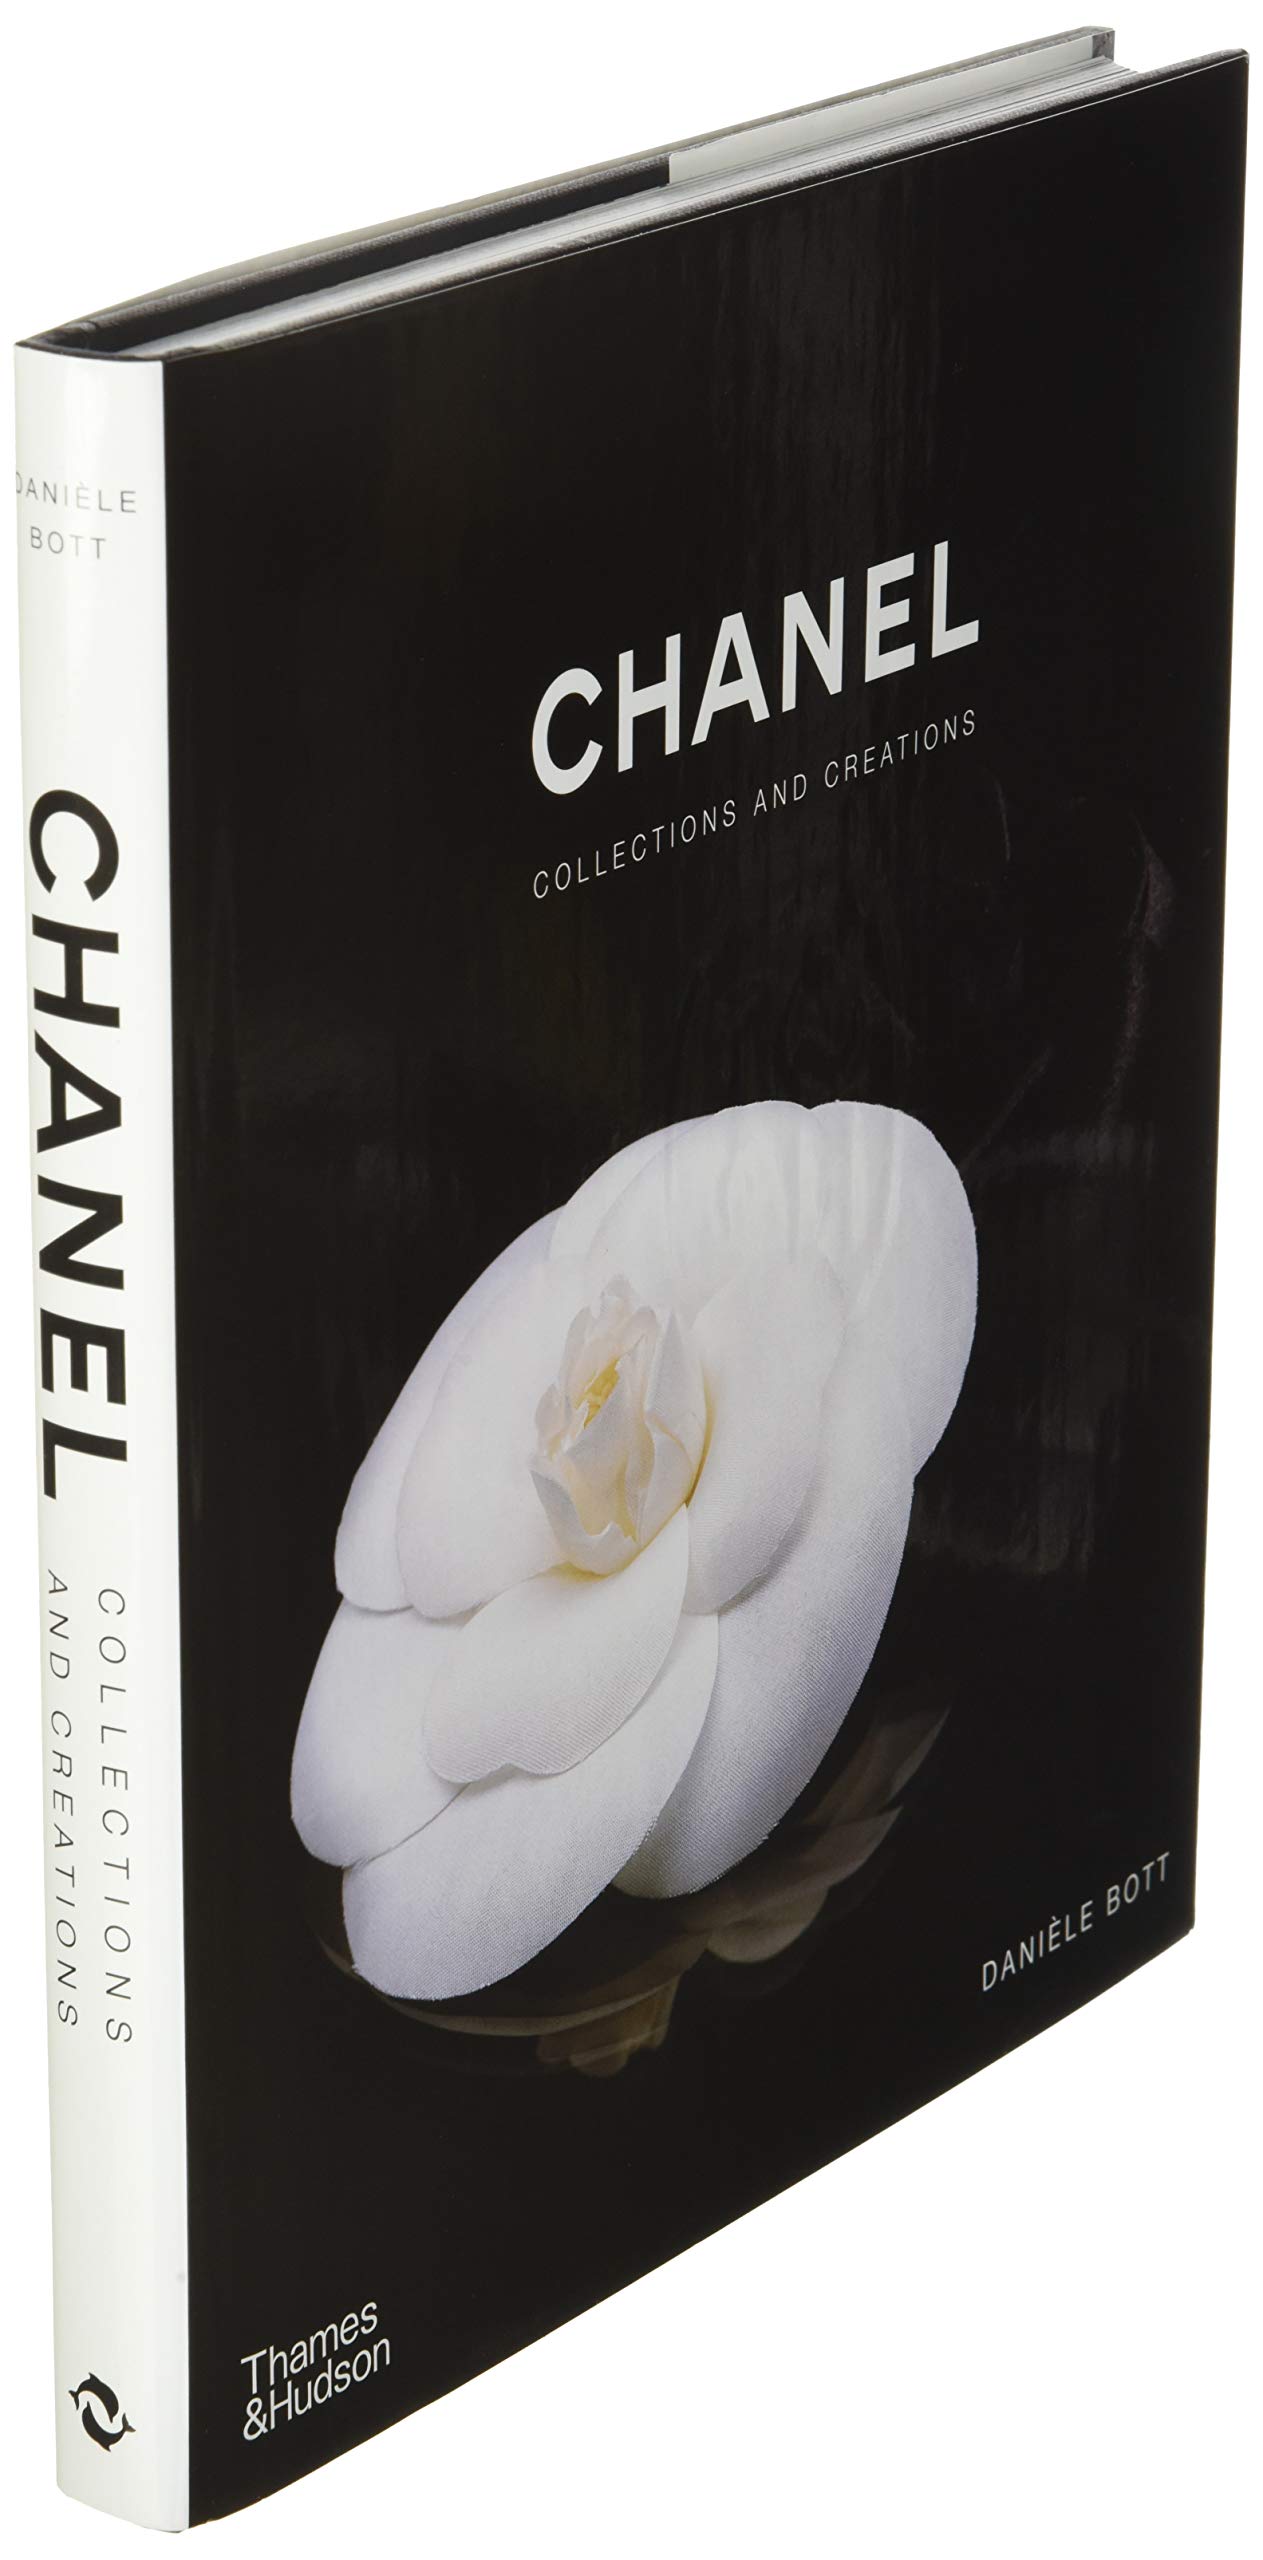 Mua Chanel Collections and Creations trên Amazon Mỹ chính hãng 2023   Giaonhan247